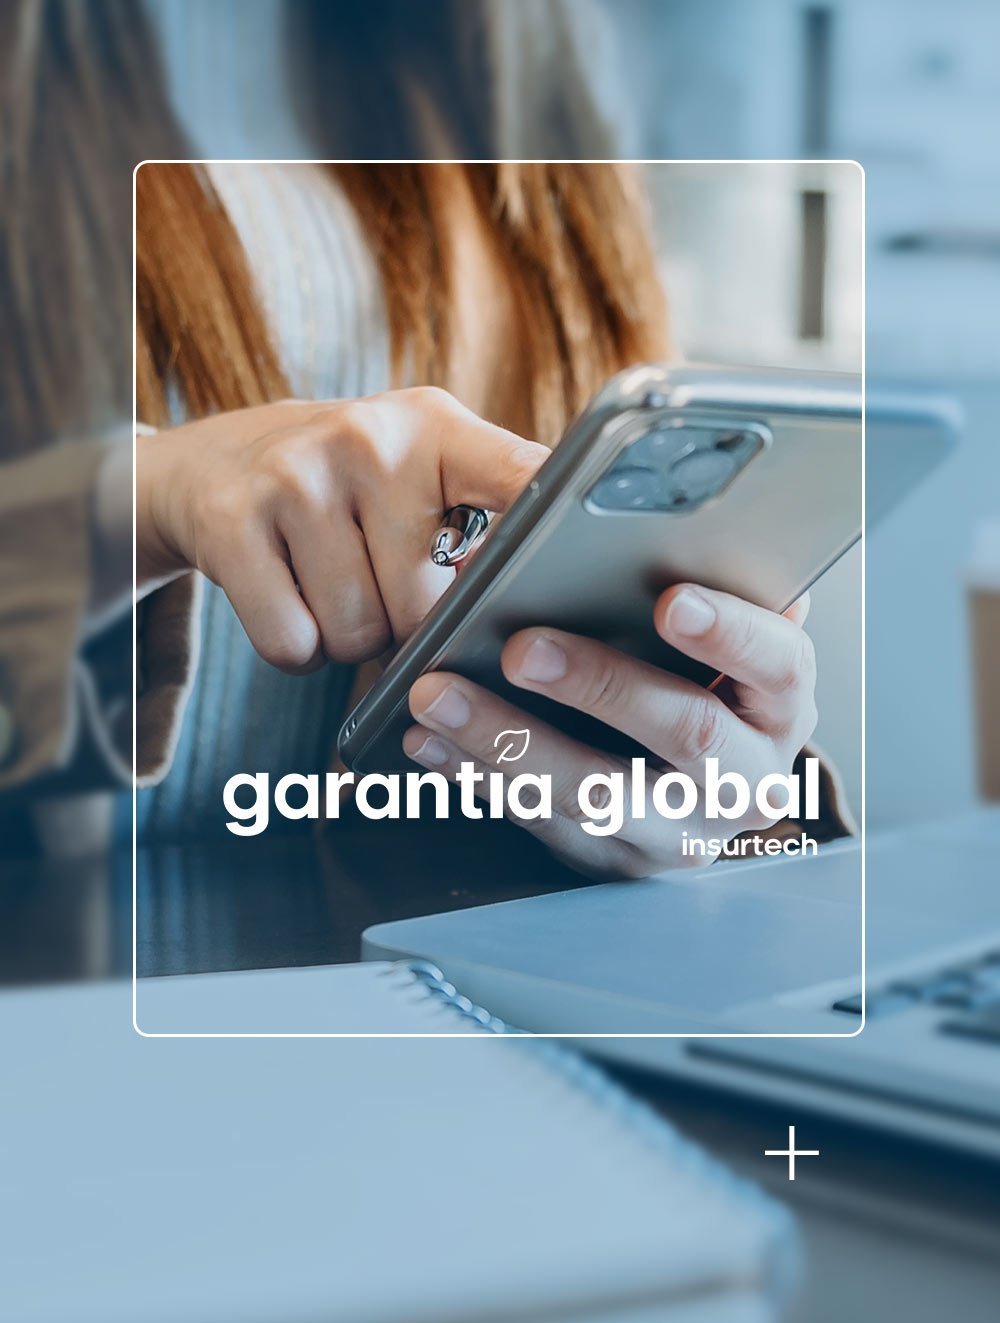 garantia-global-insurtech3